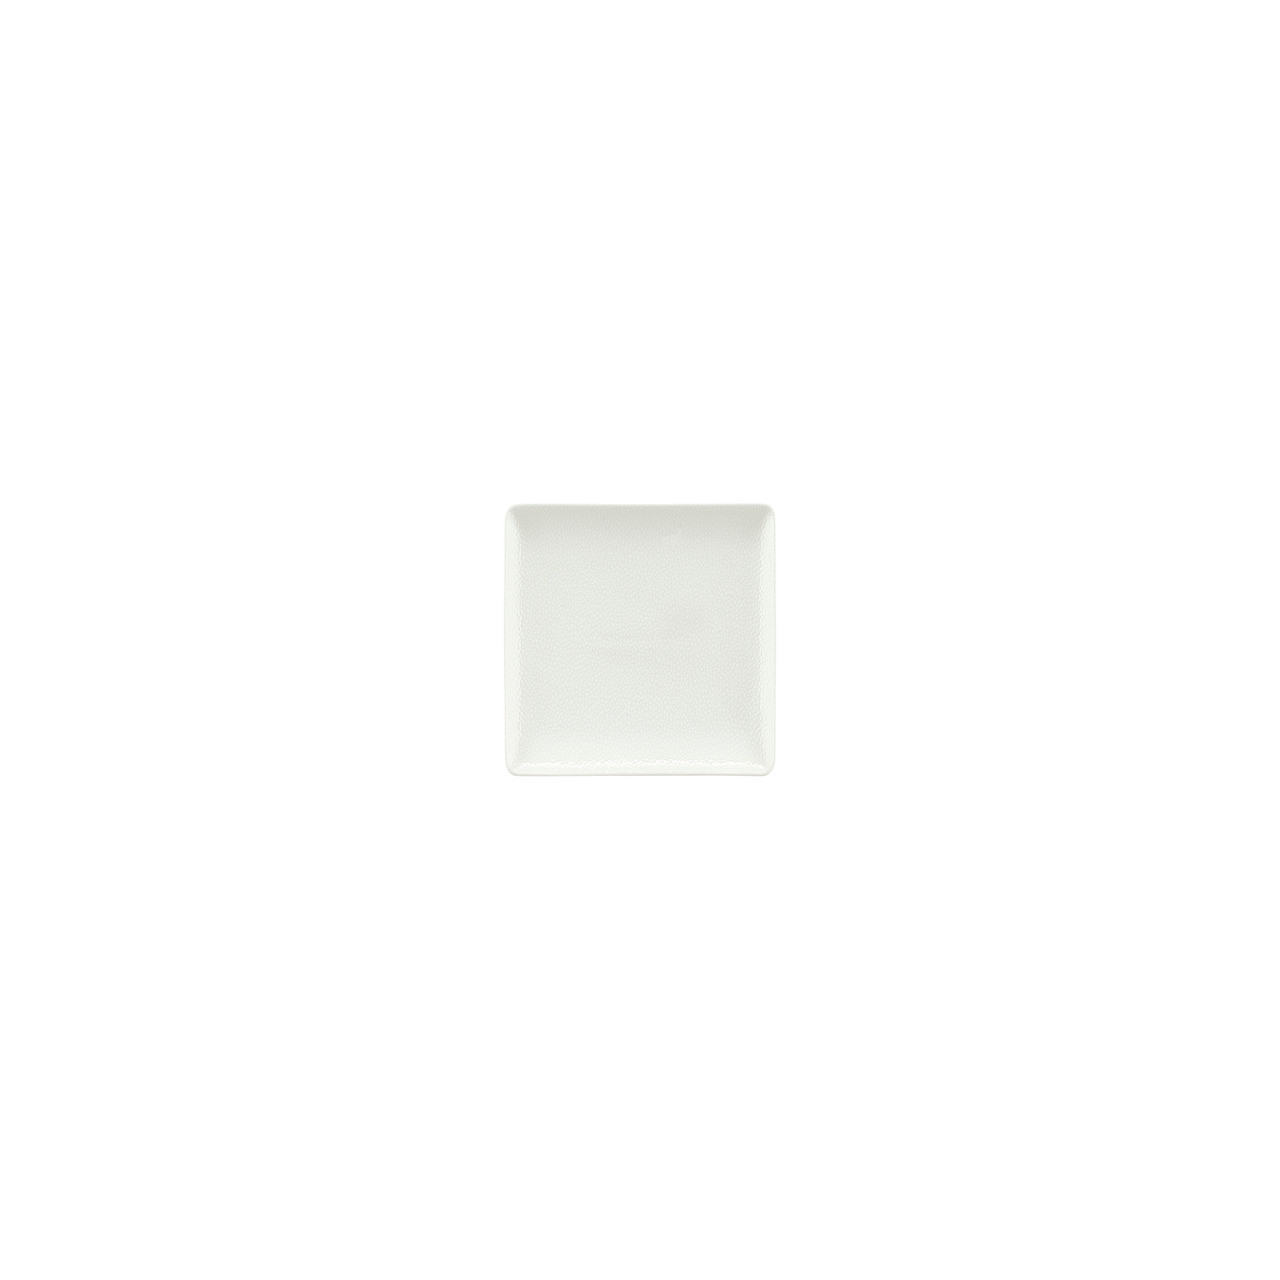 Pearls, Coupteller flach quadratisch 88 x 88 mm light